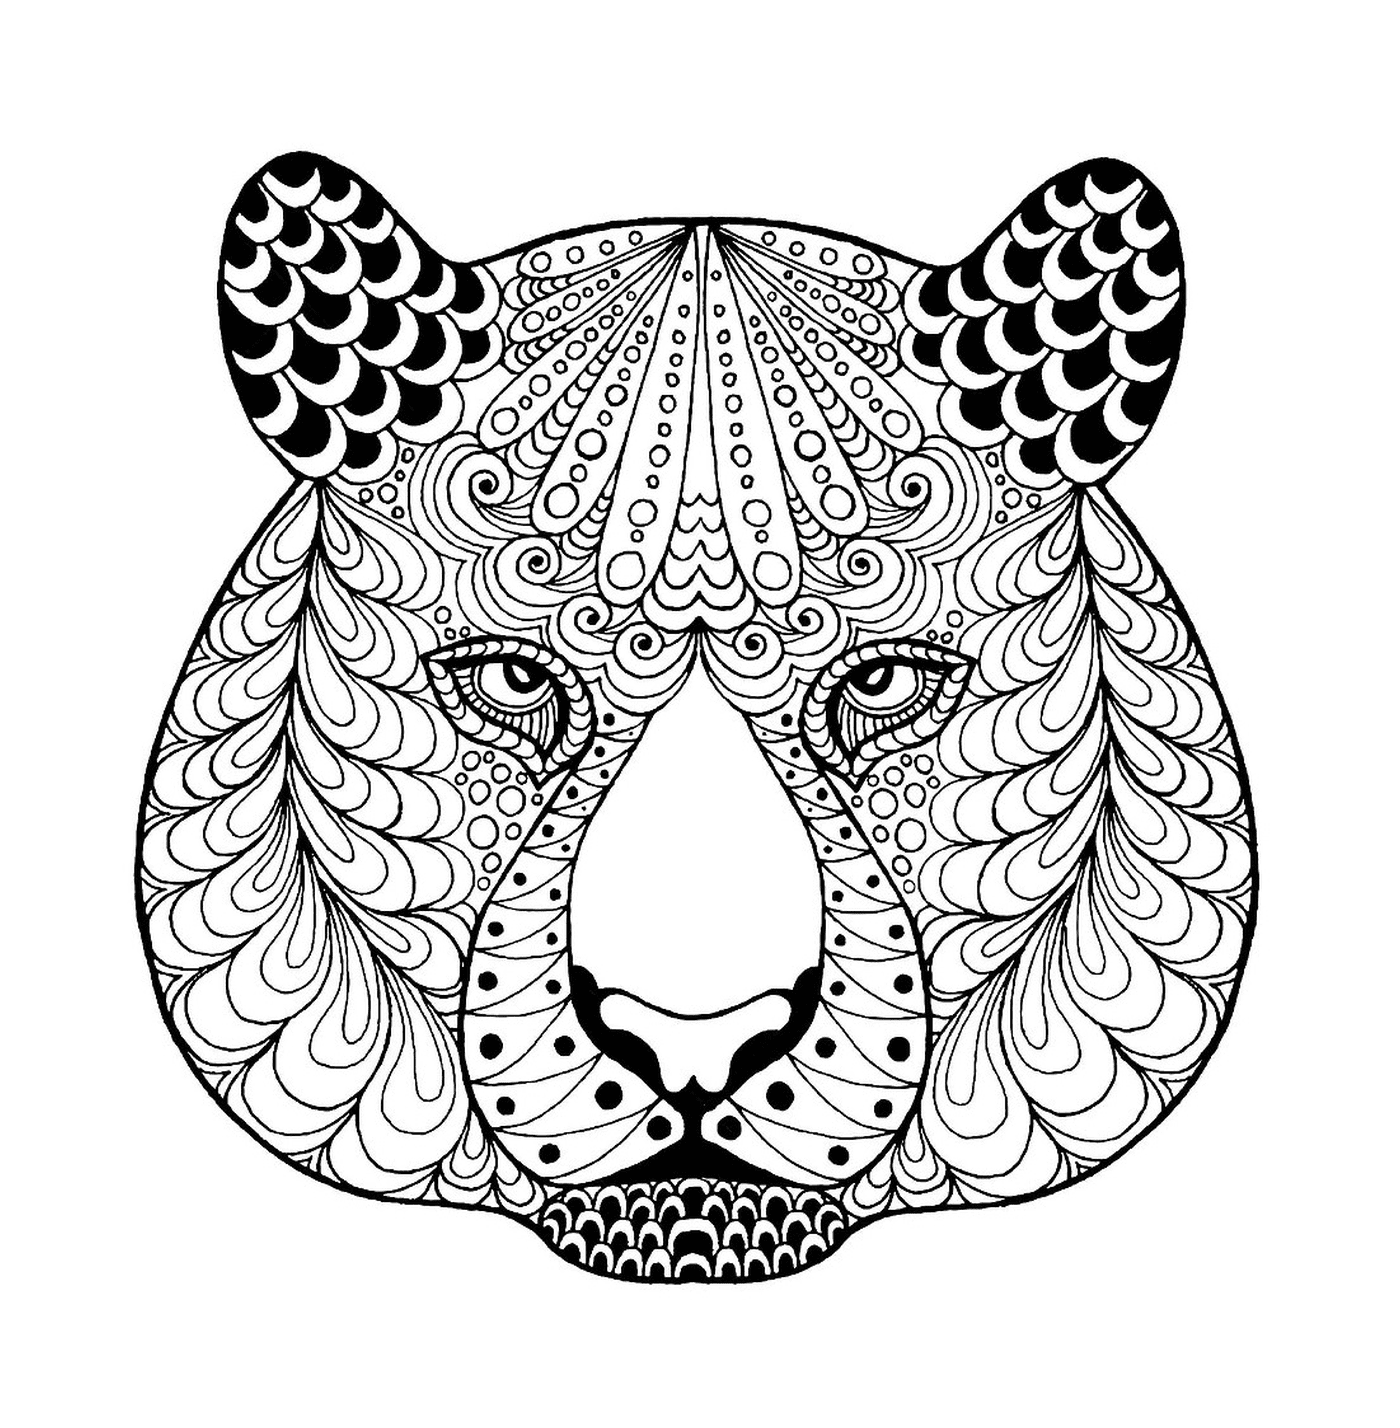  Uma cabeça de tigre zentangle com padrões 